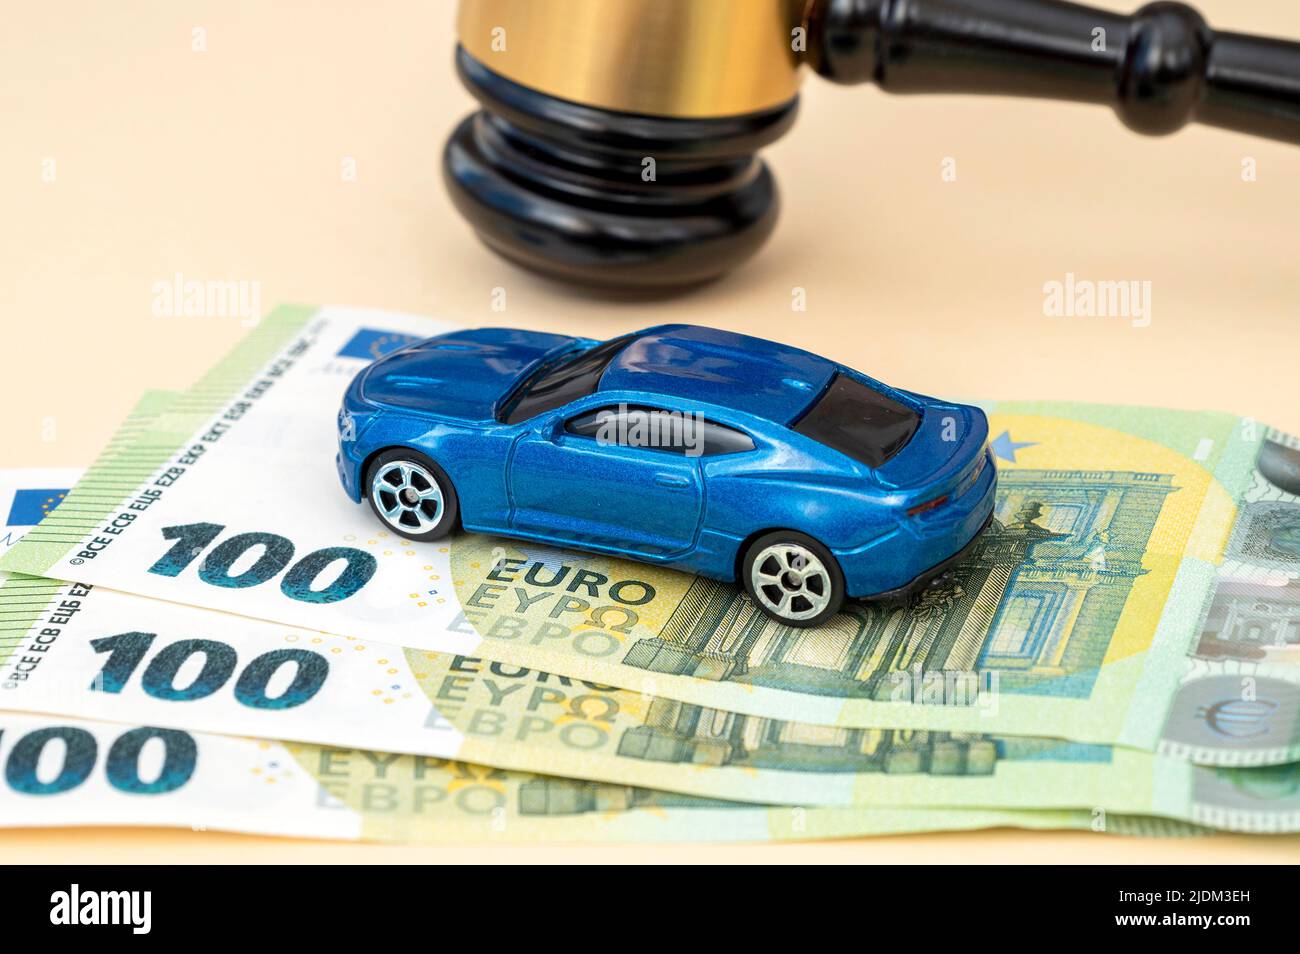 Gavel de juge, modèle de voiture et 100 billets en euros sur la table en cour, schéma conceptuel Banque D'Images